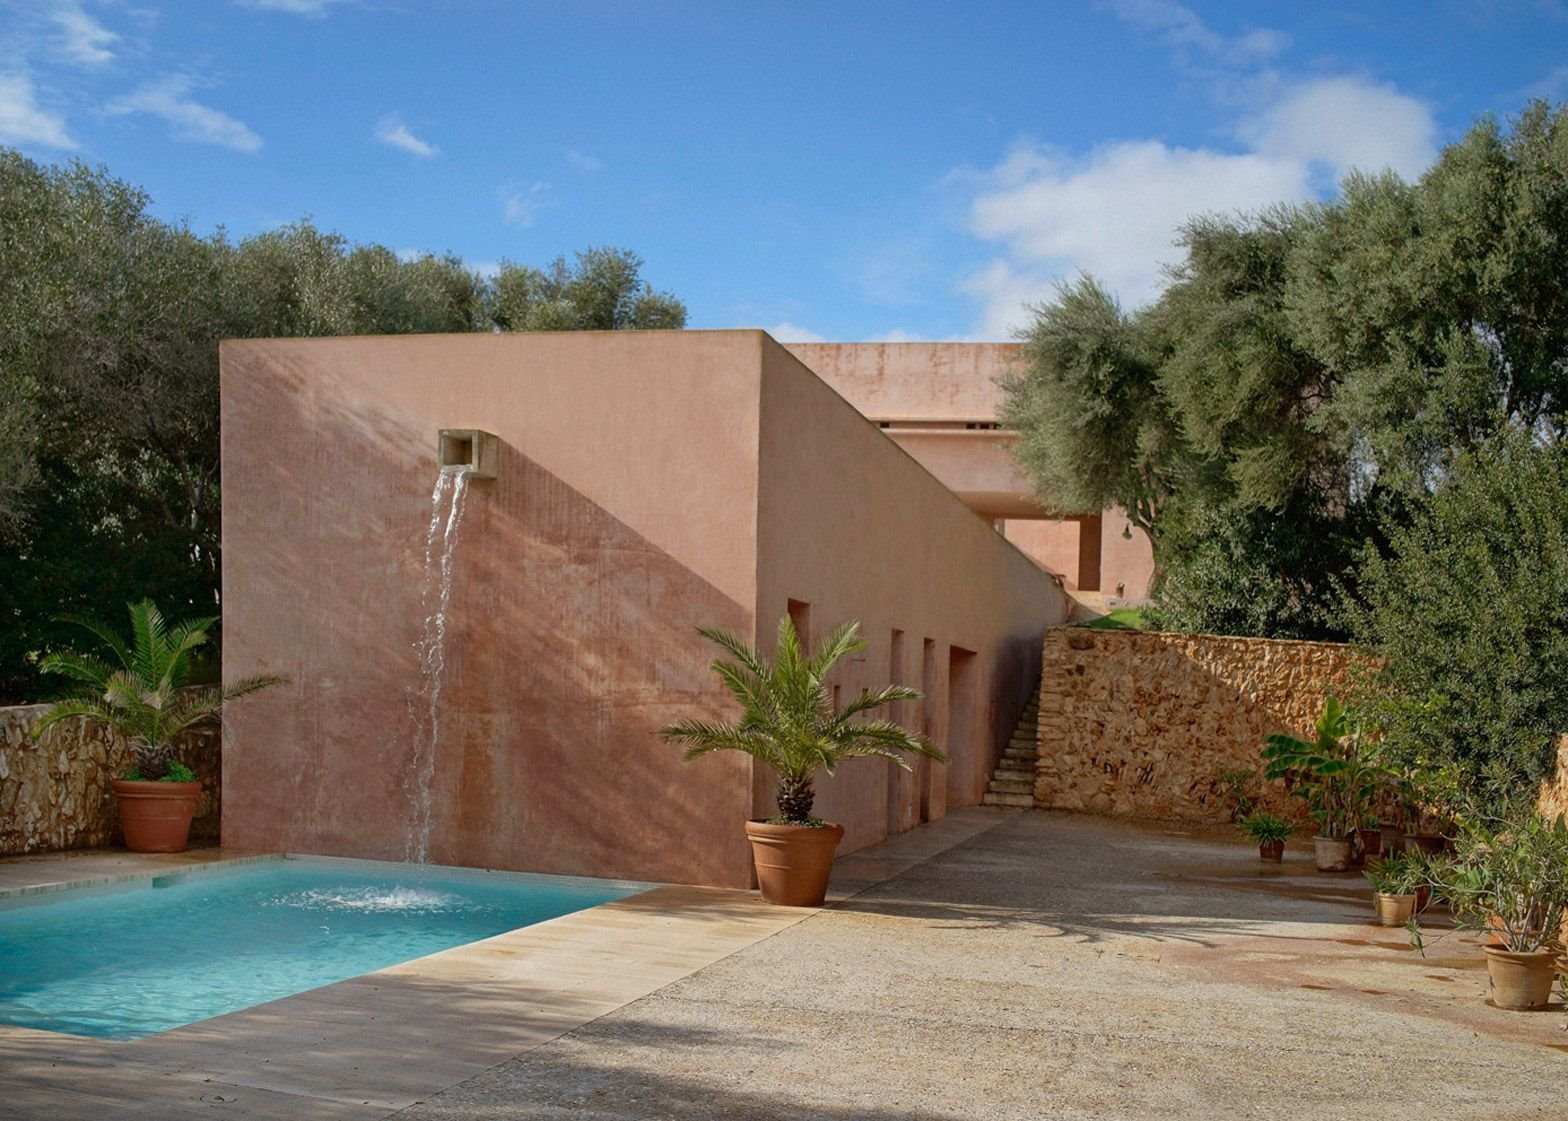 Casa de color rosa de claudio Silvestrin y John pawson en Mallorca piscina con alberca